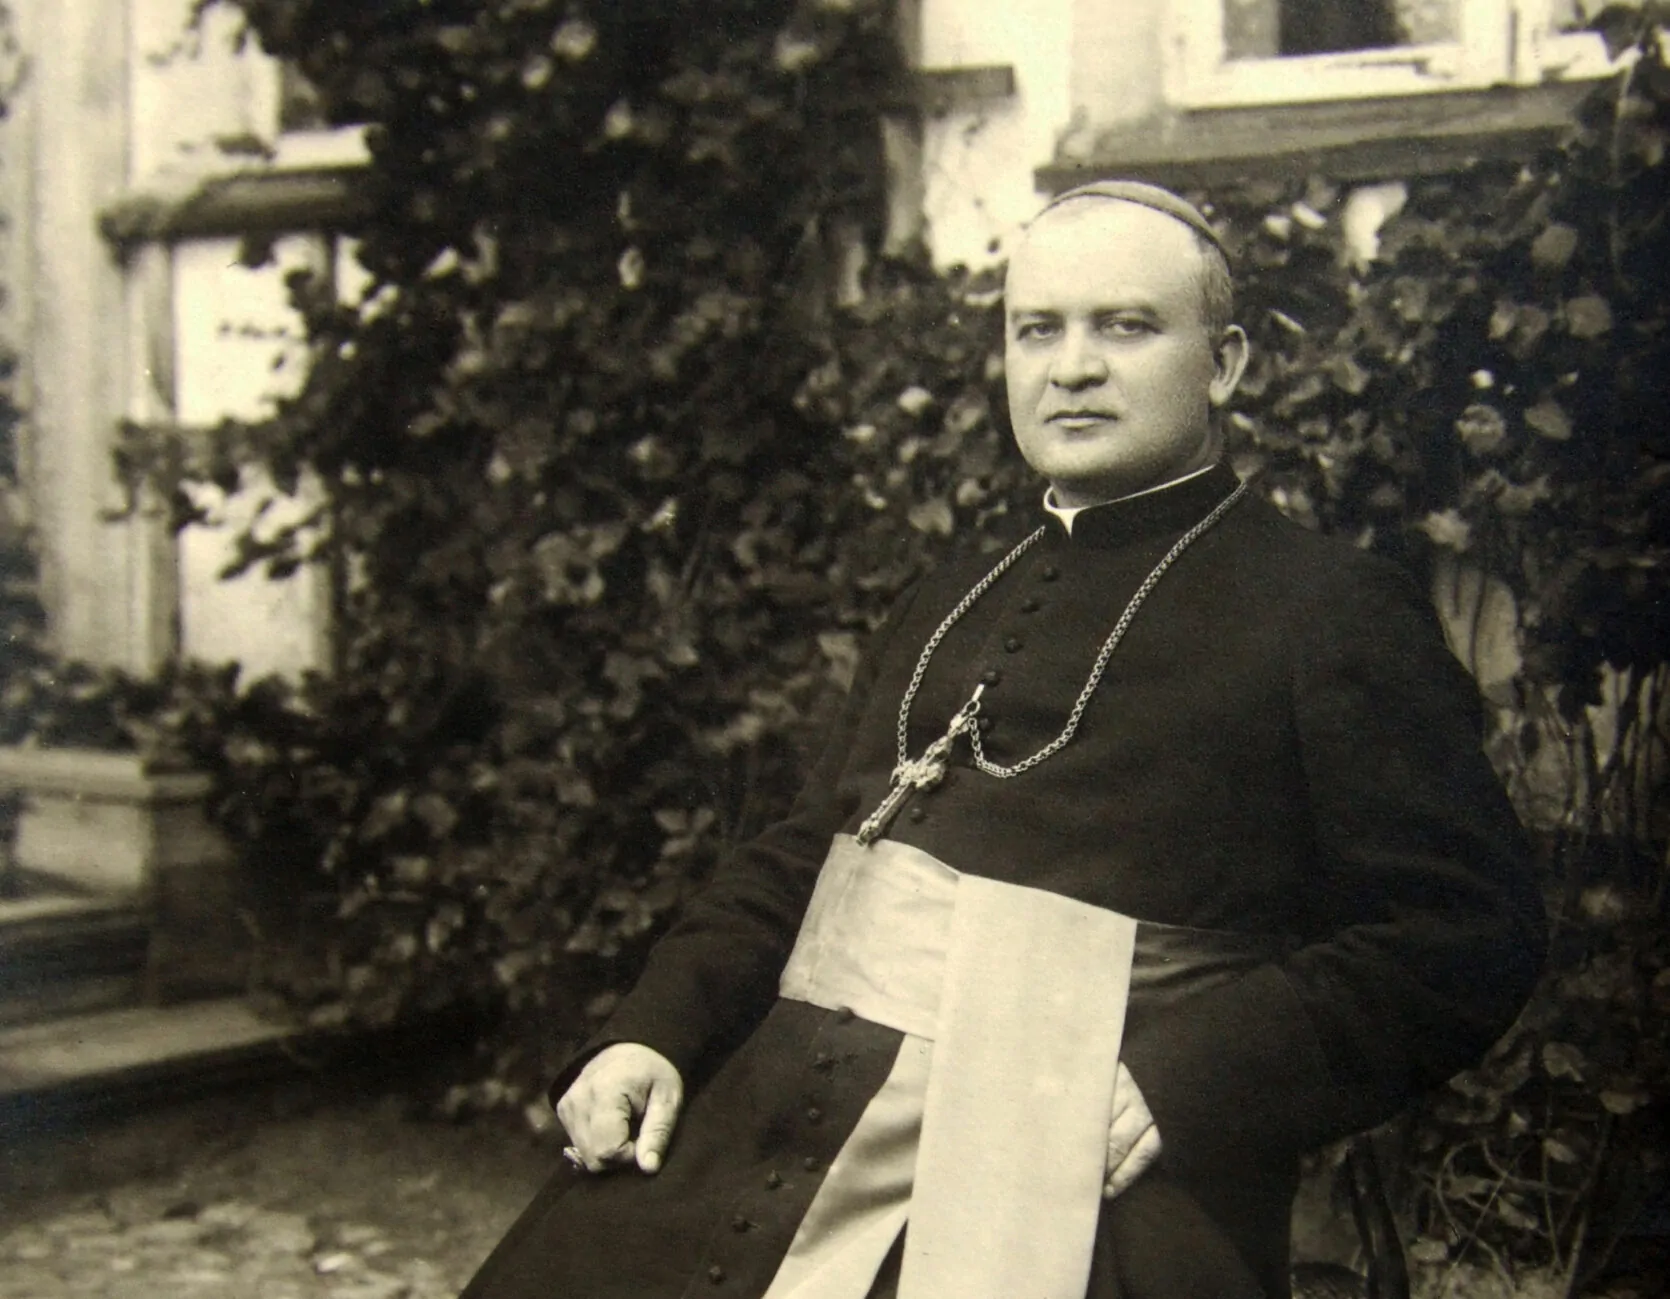 You are currently viewing Pirmieji pal. J. Matulaičio vyskupystės metai: įžūlūs bolševikai, šūviai prie bažnyčios ir vokiečių kunigo gelbėjimas